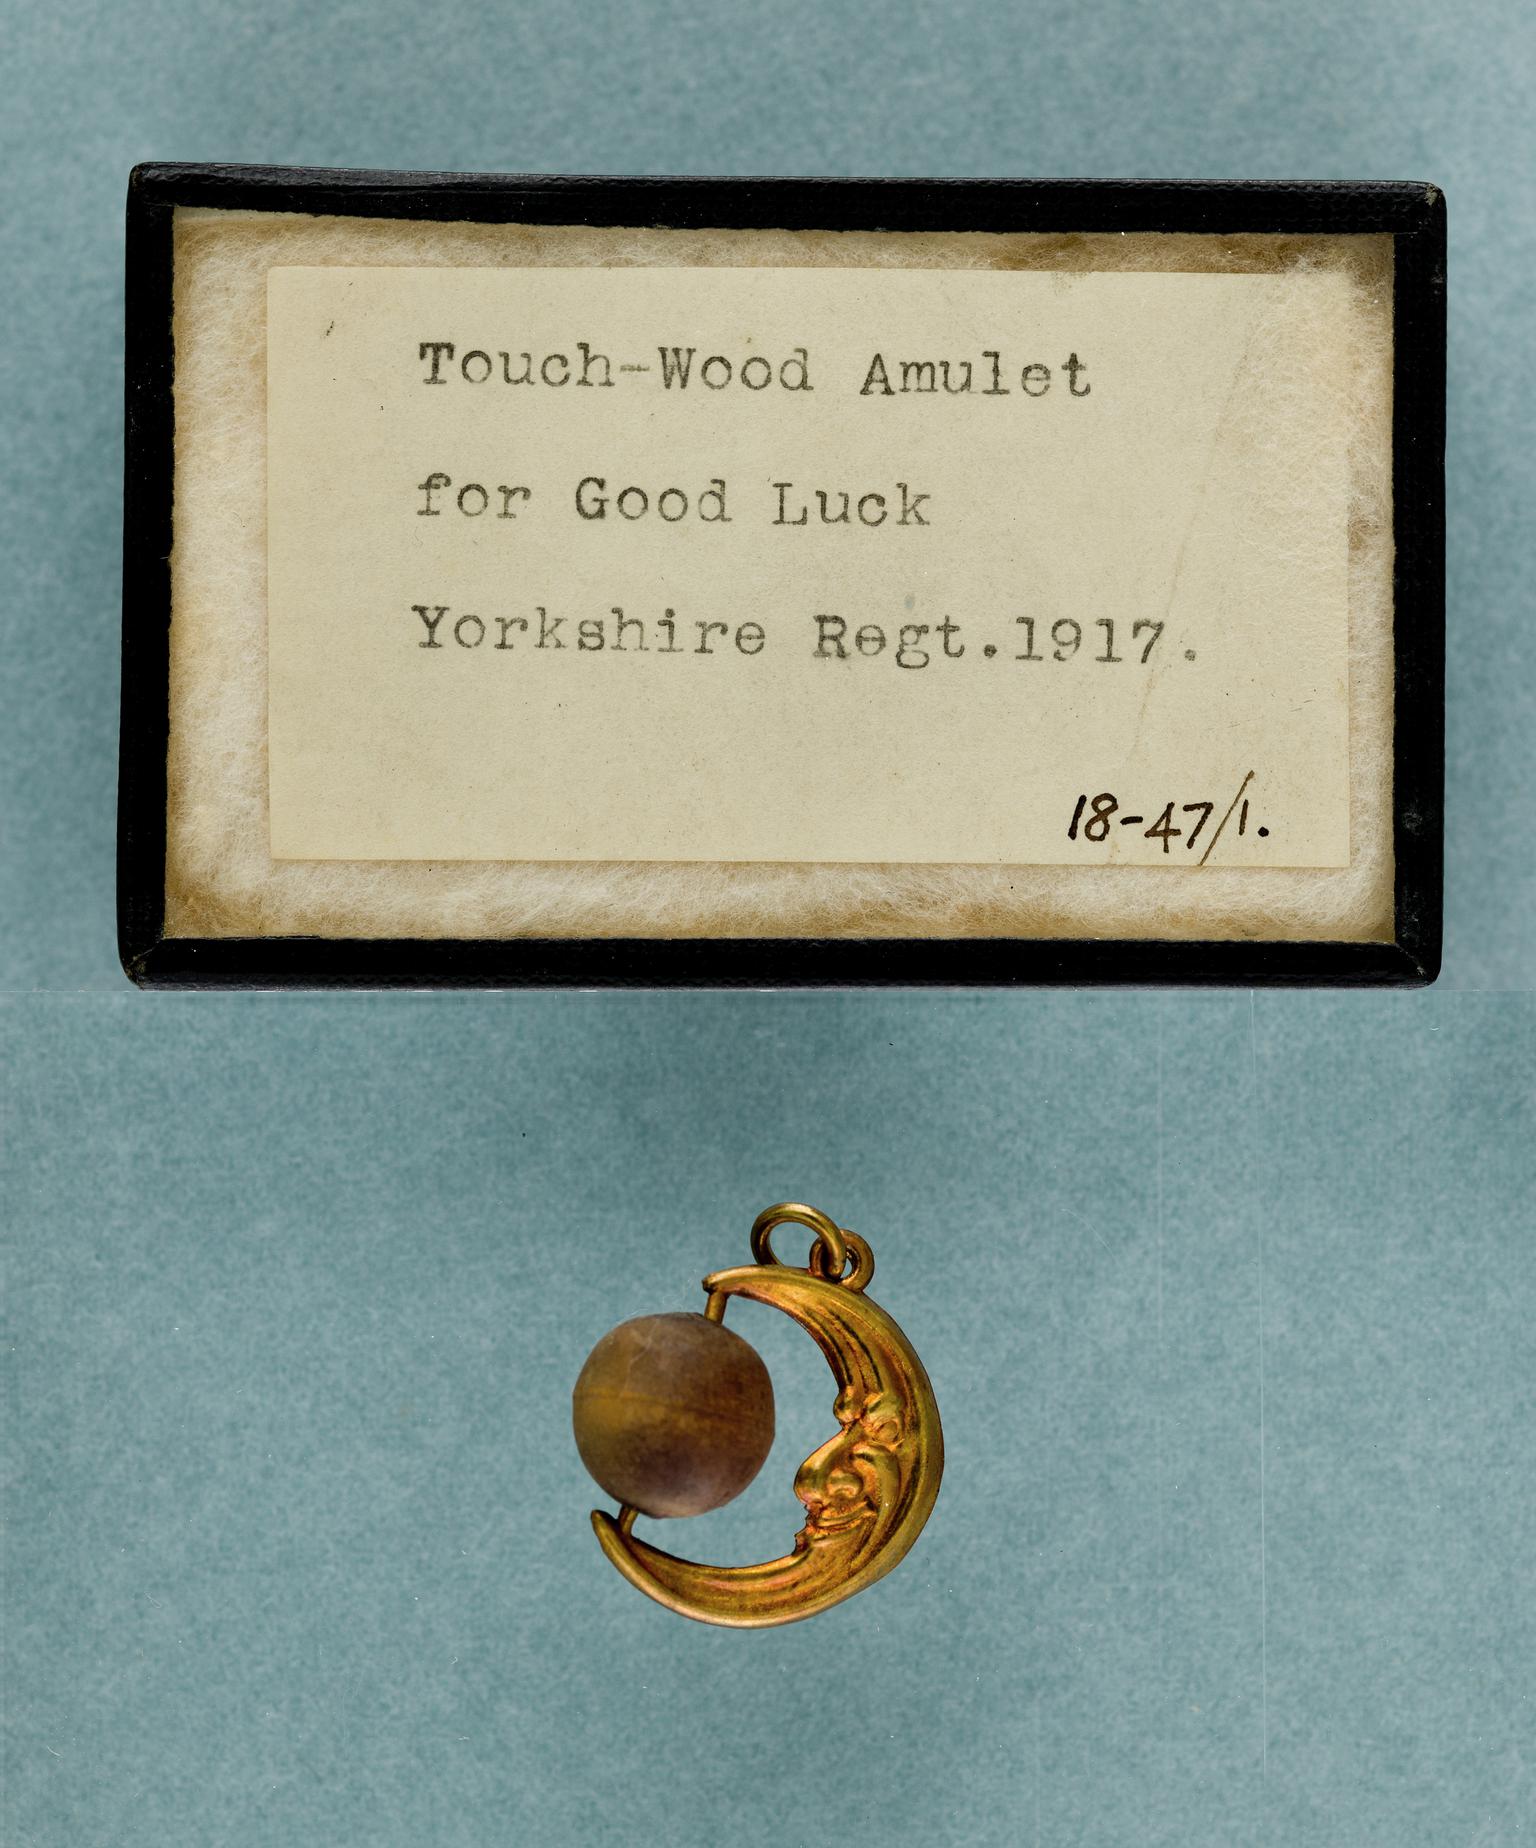 Touchwood amulet